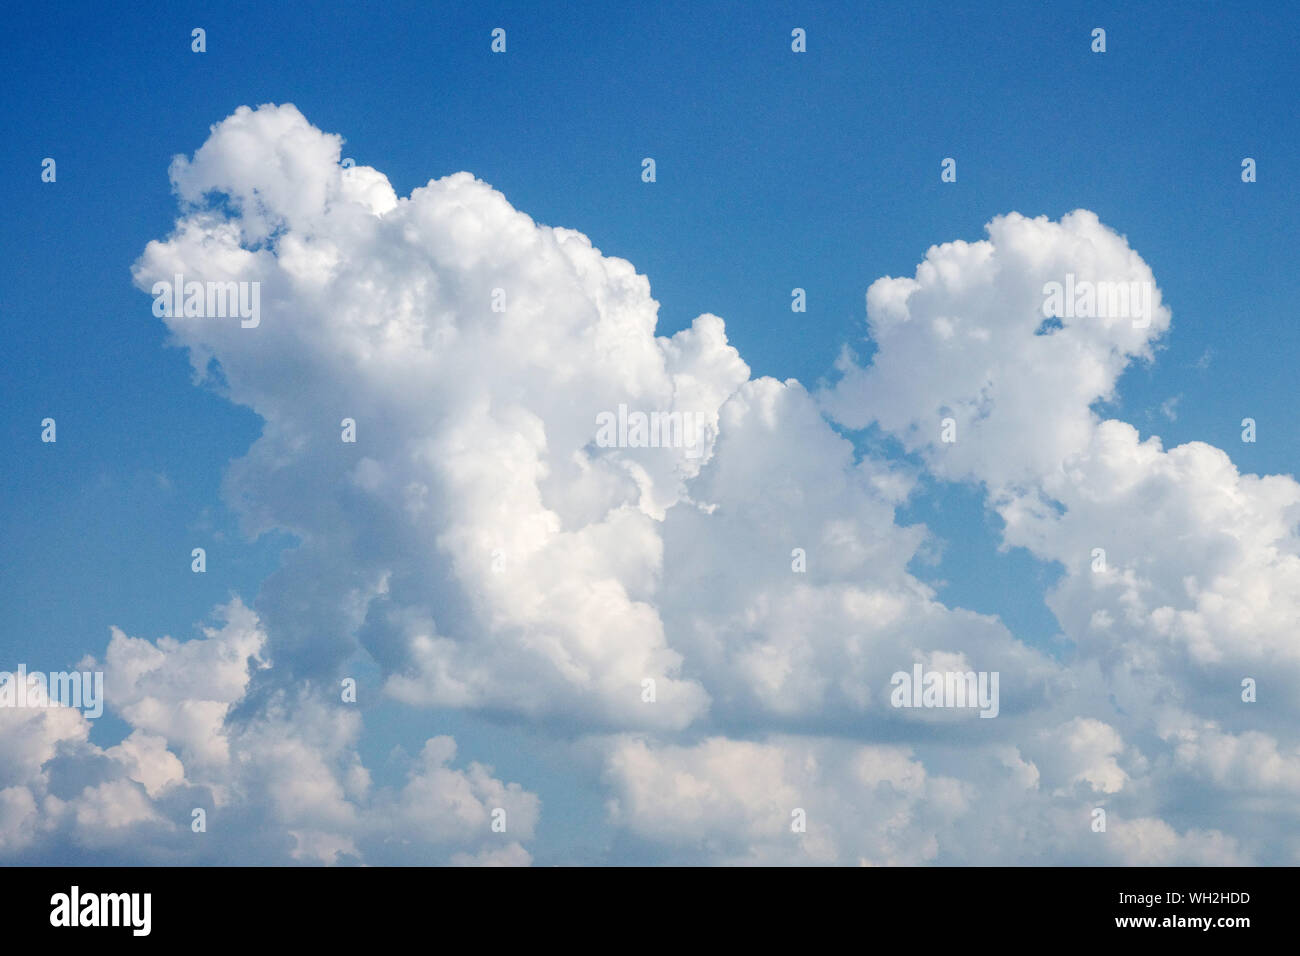 Flauschige weiße Wolken am blauen Himmel, Kumulusbildung Stockfoto